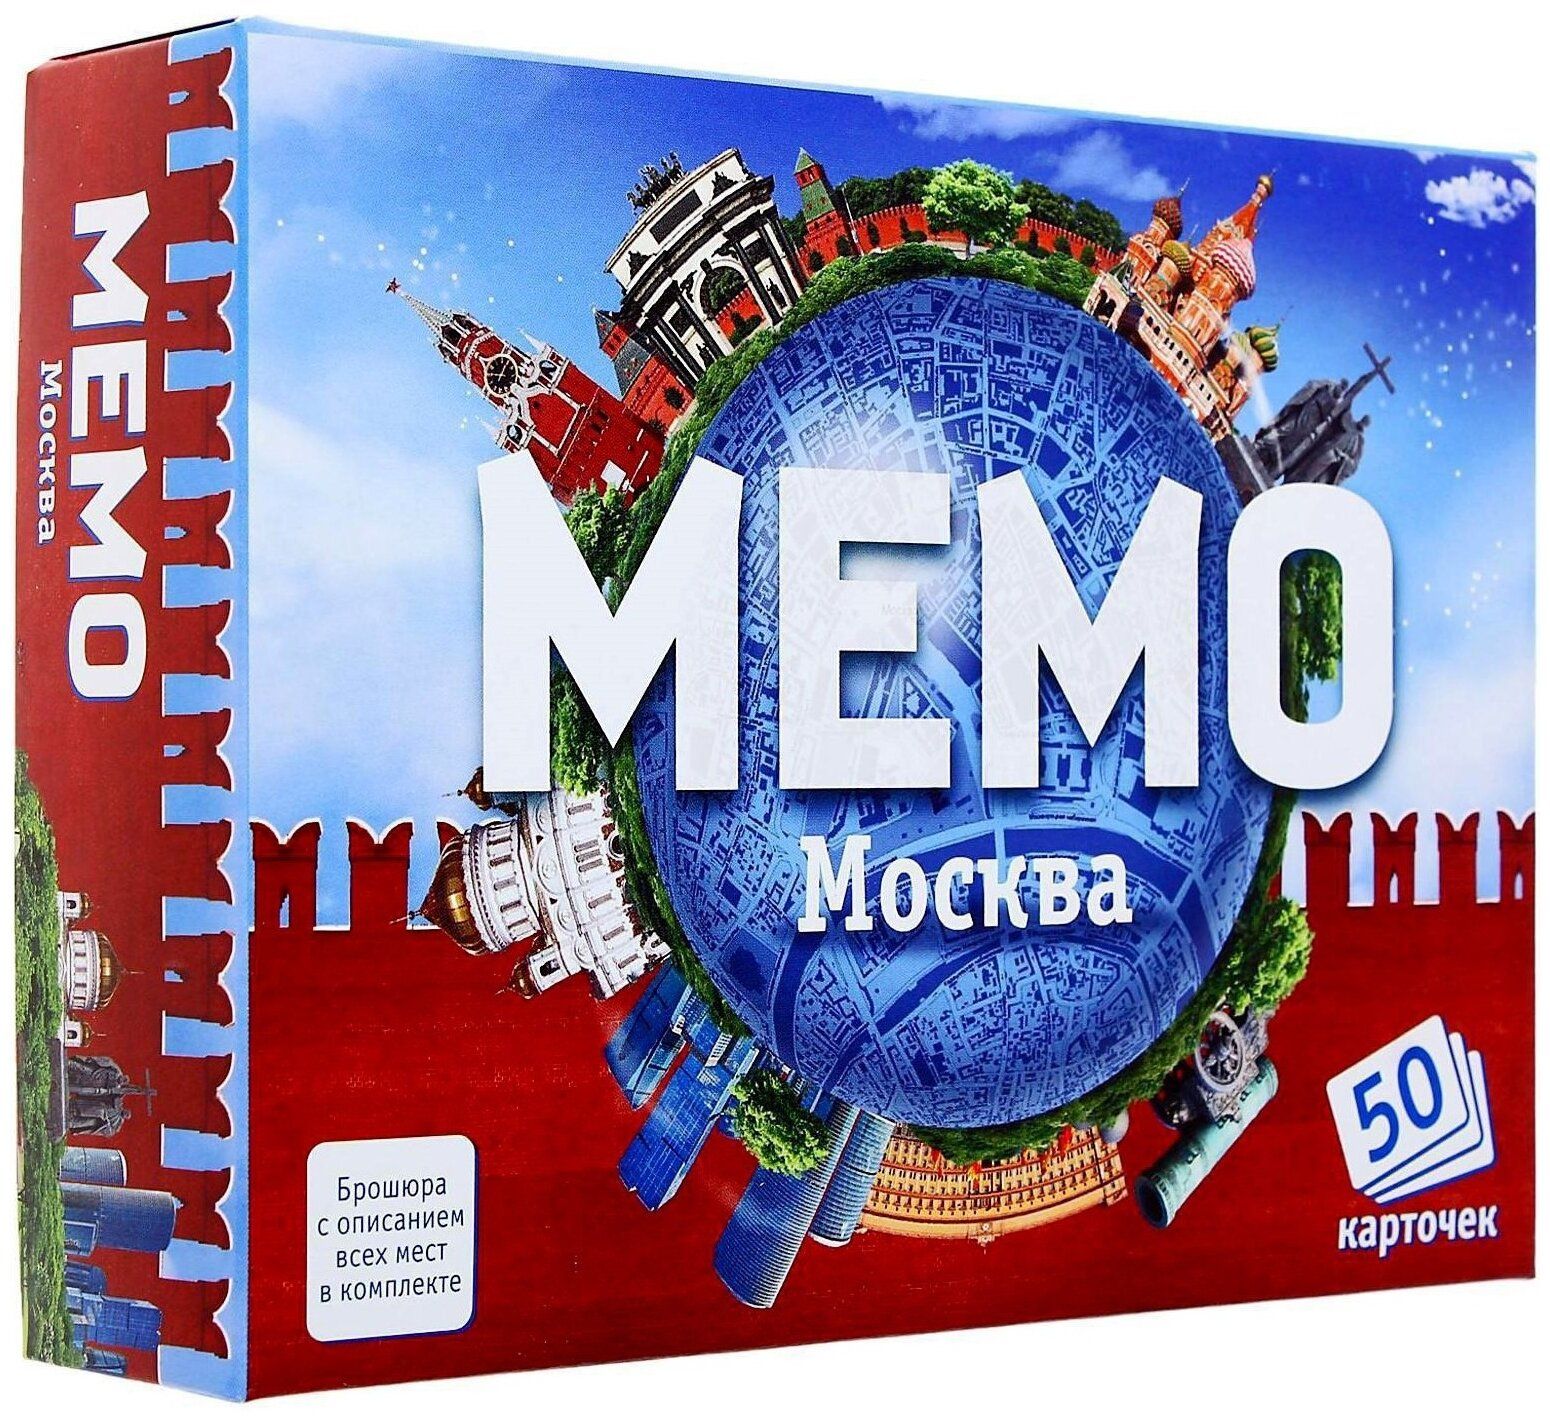 Мемо Москва арт.7205 (50 карточек) /48 настольная игра piatnik мемо зверята 2